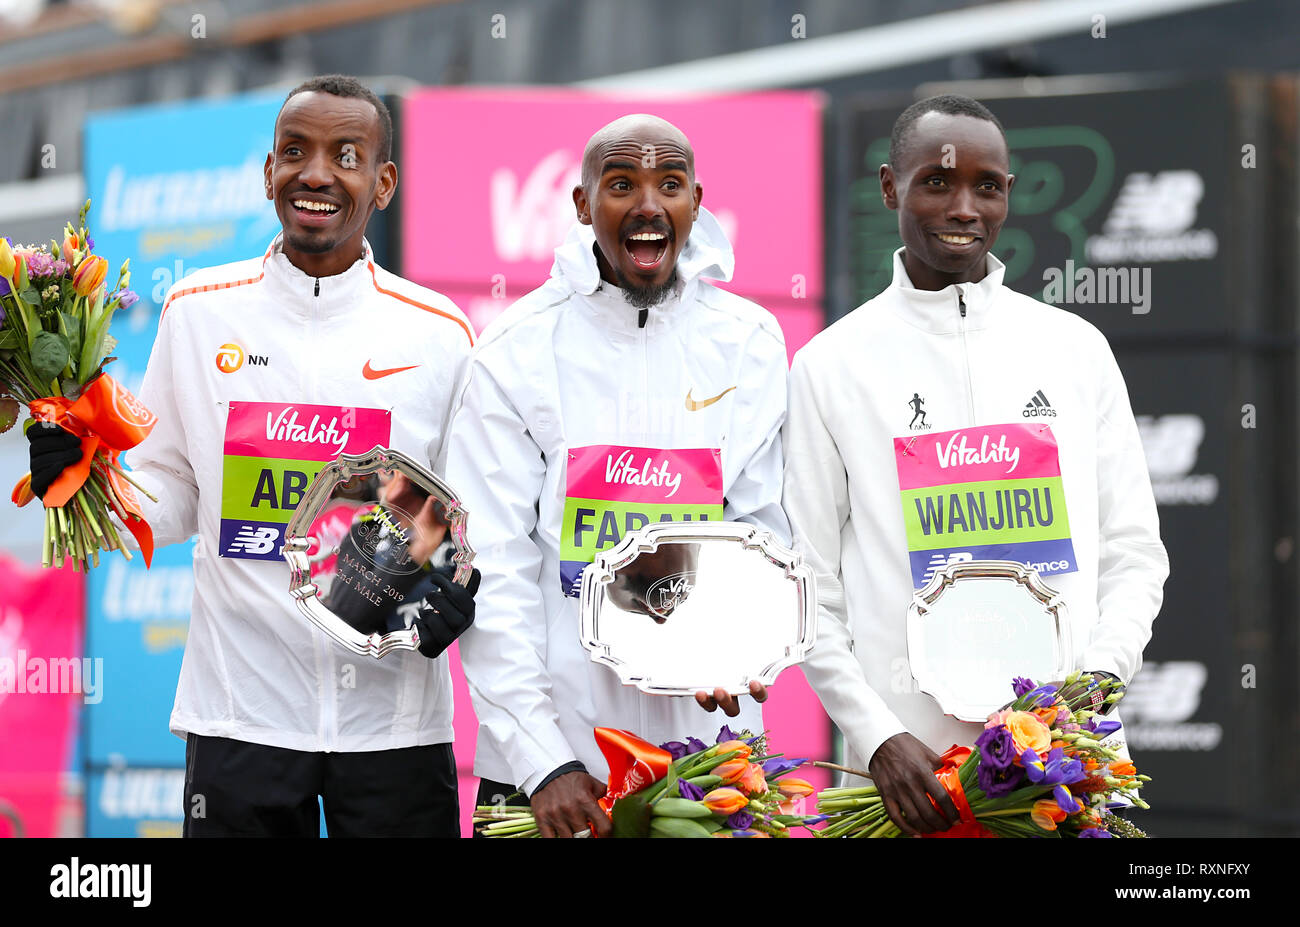 Mo Farah vainqueur de la course des hommes (au centre) avec Bashir Abdi qui a terminé secoond (à gauche) et Daniel Wanjiru qui a terminé troisième au cours de la grande vitalité de la moitié à Londres. Banque D'Images